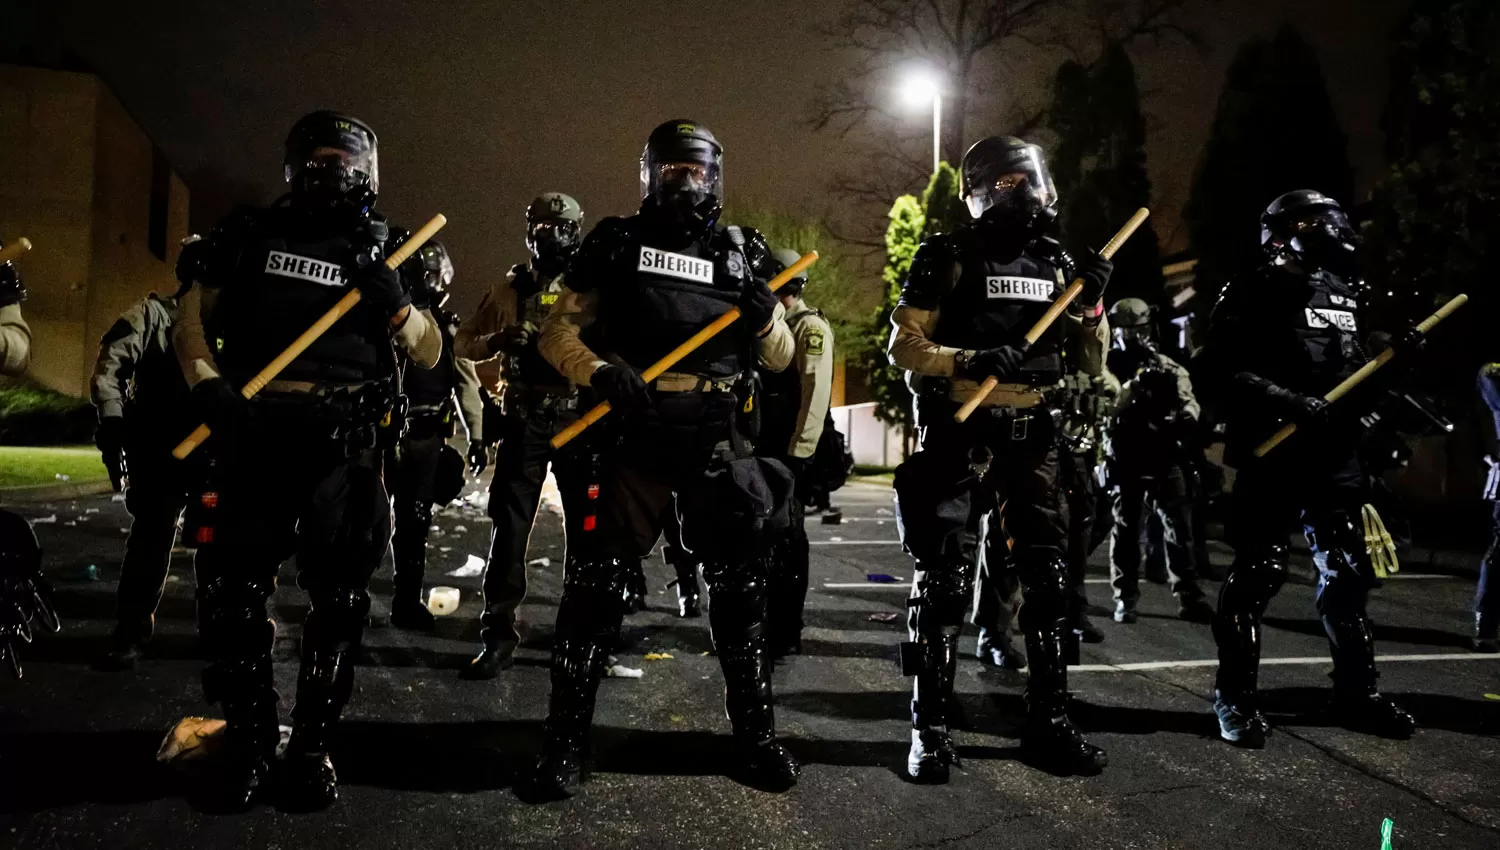 ARMADOS. Las fuerzas de seguridad respondieron con su presencia en las manifestaciones en Minneapolis.